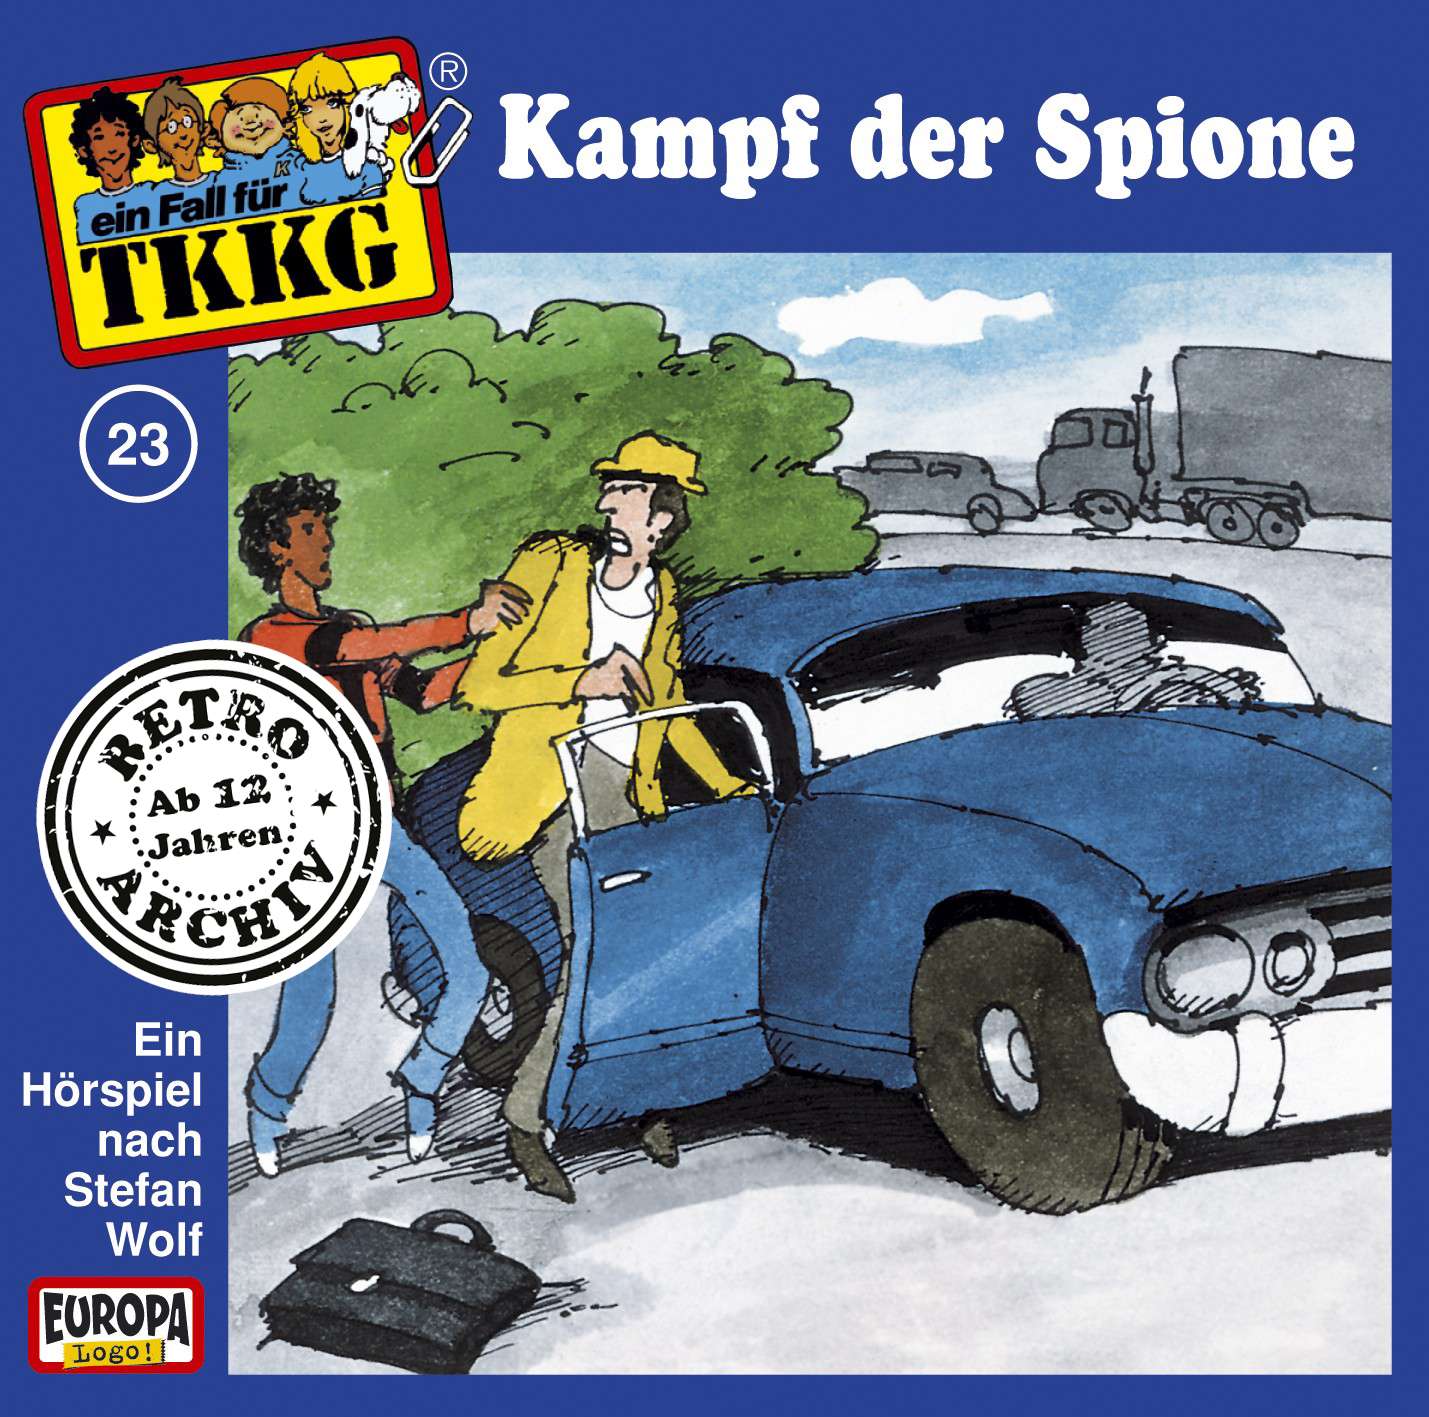 TKKG Retro-Archiv - Kampf der Spione